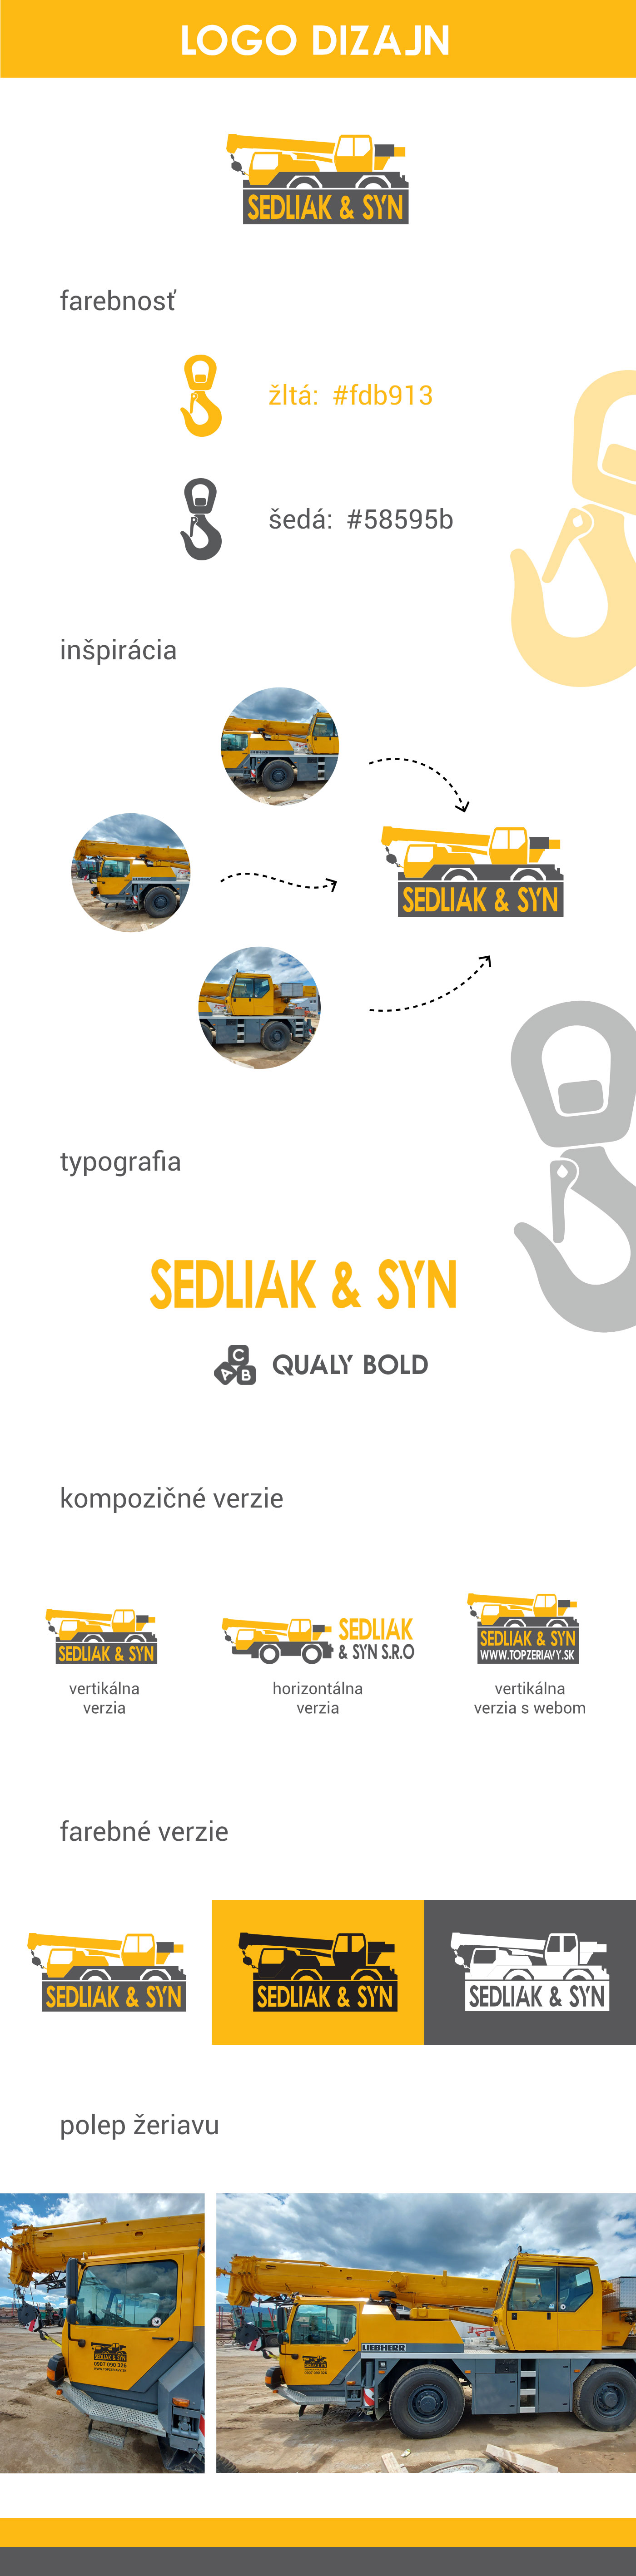 Sedliak & syn logo